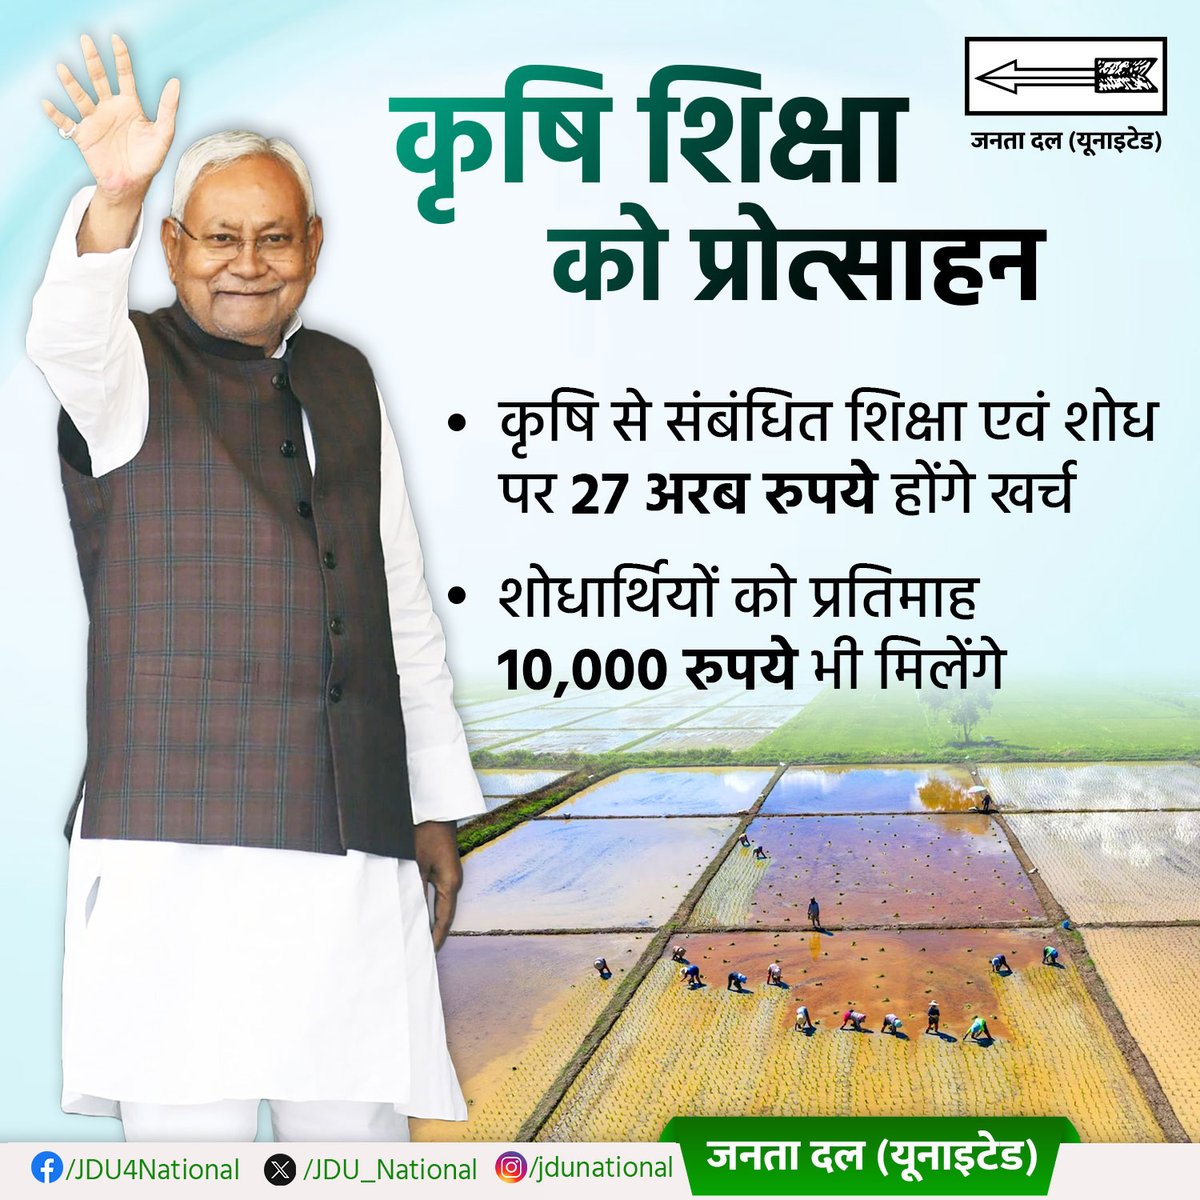 किसानों की आर्थिक उन्नति के लिए कृषि के आधुनिकीकरण पर जोर दिया जा रहा है।

#BiharPride #JDUNational #NitishKumar #JDU #BiharLatestNews